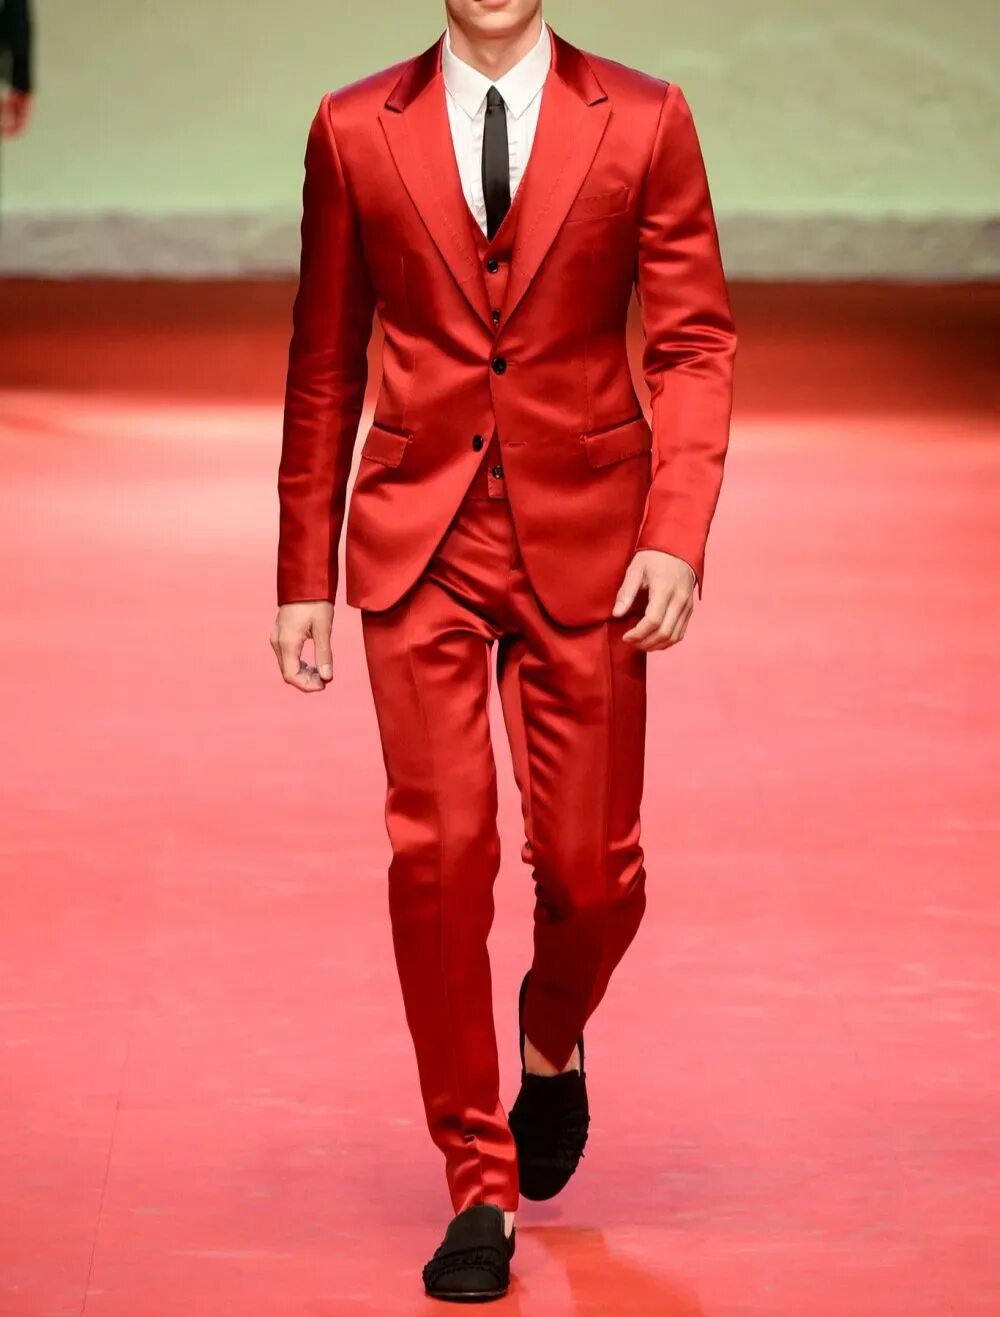 Купить красные мужской костюм. Дольче Габбана красный костюм. Дольче Габбана красный пиджак. Модные мужские костюмы. Красный костюм мужской классический.